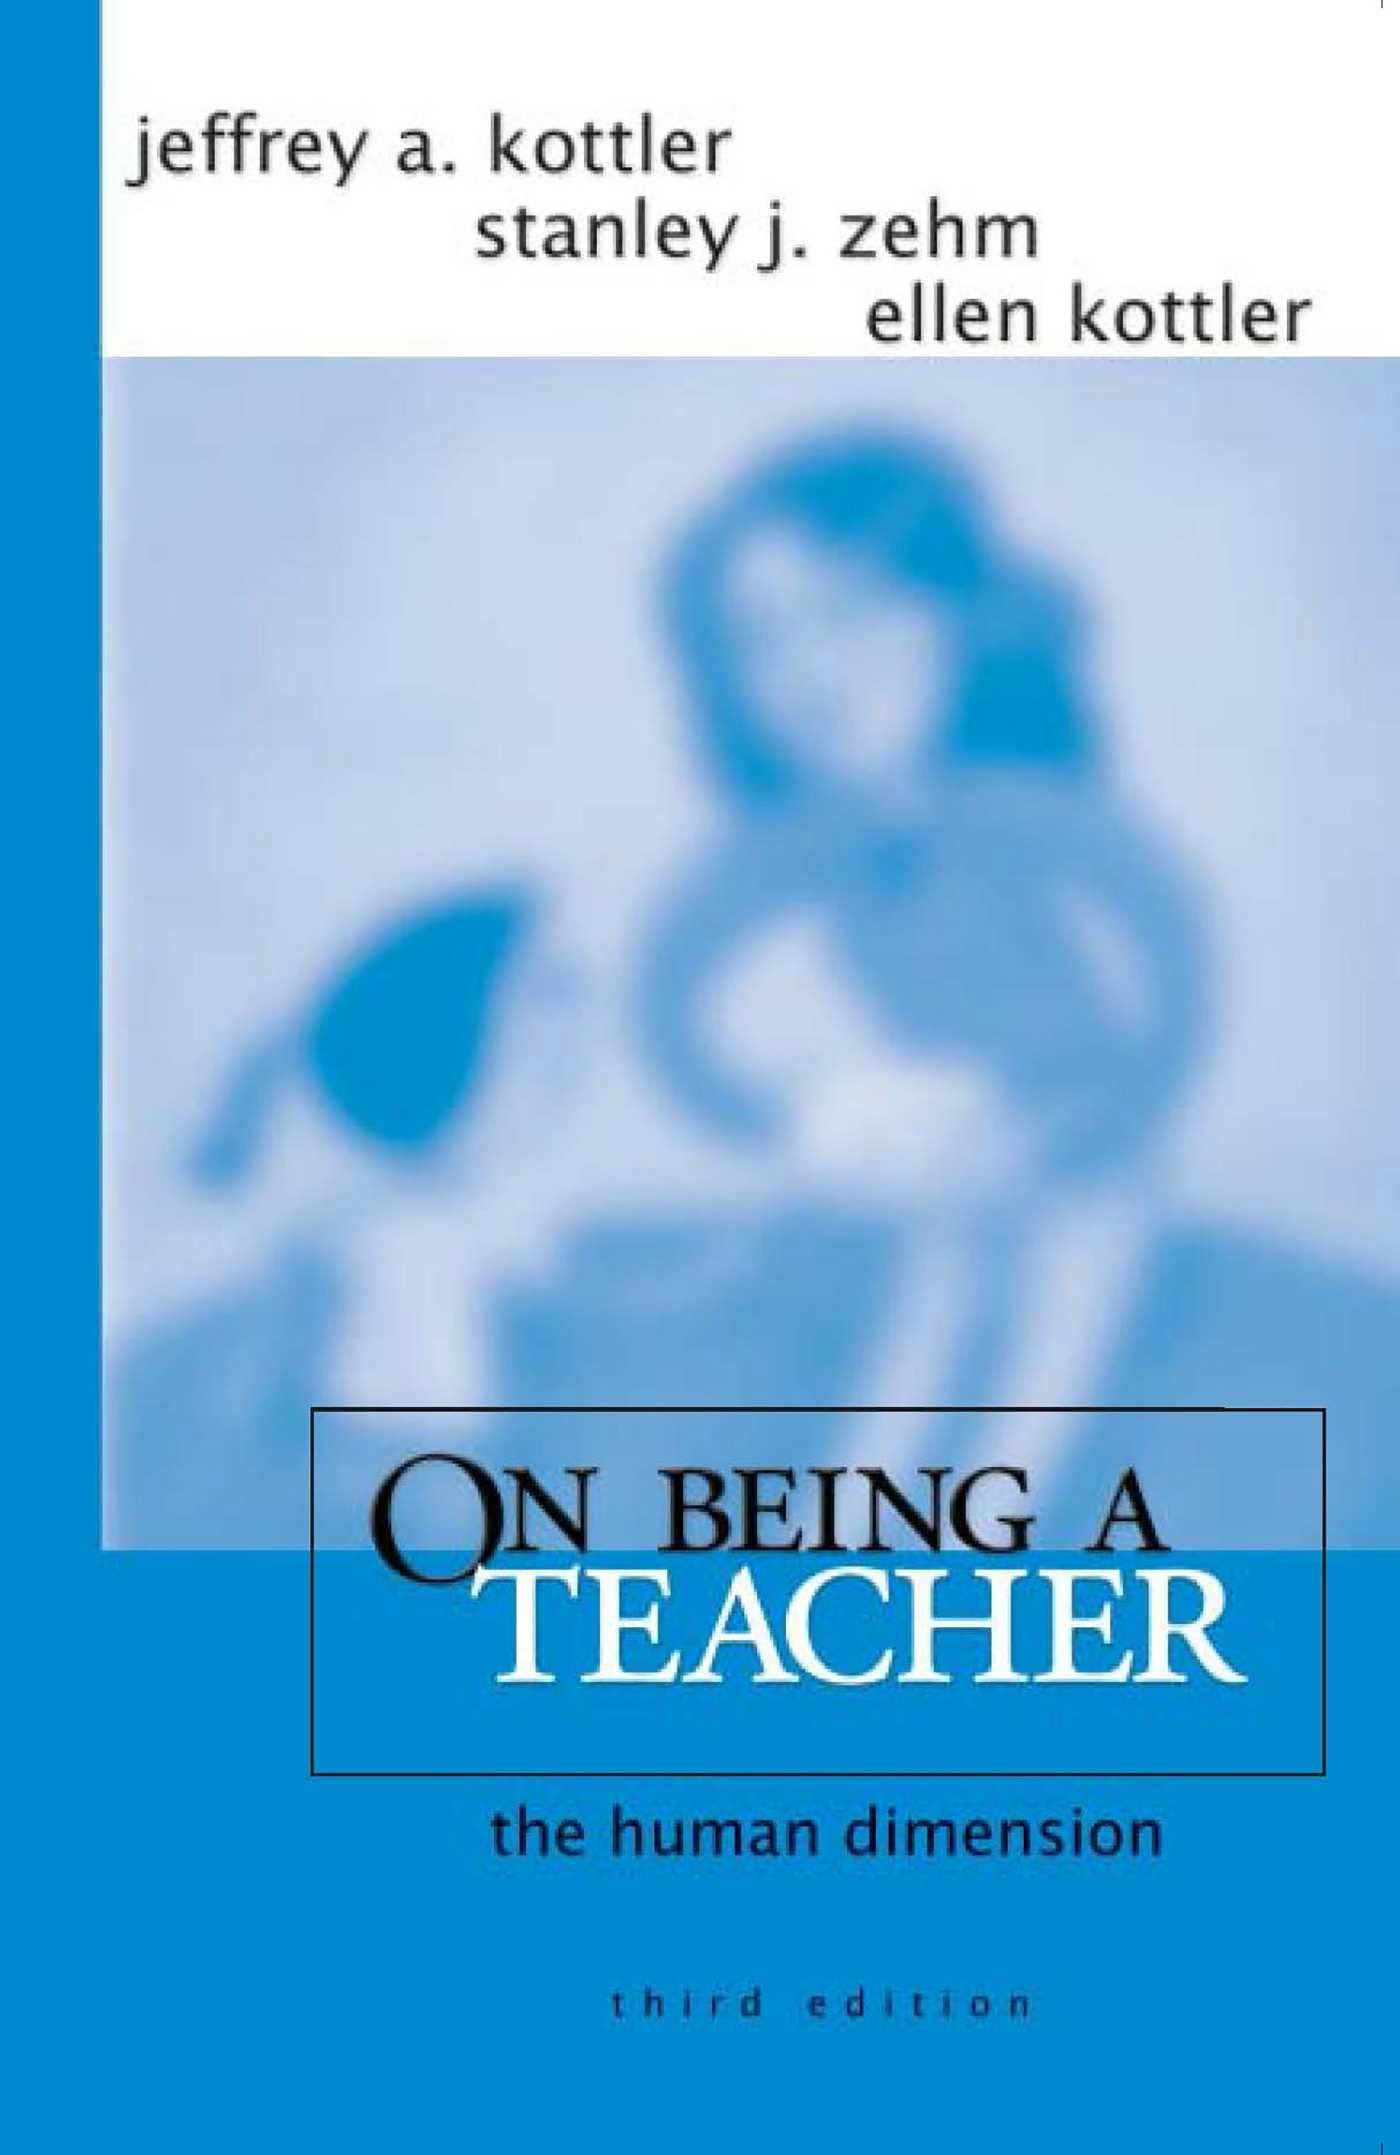 On Being a Teacher: The Human Dimension - Stanley J. Zehm, Ellen Kottler, Jeffrey A. Kottler